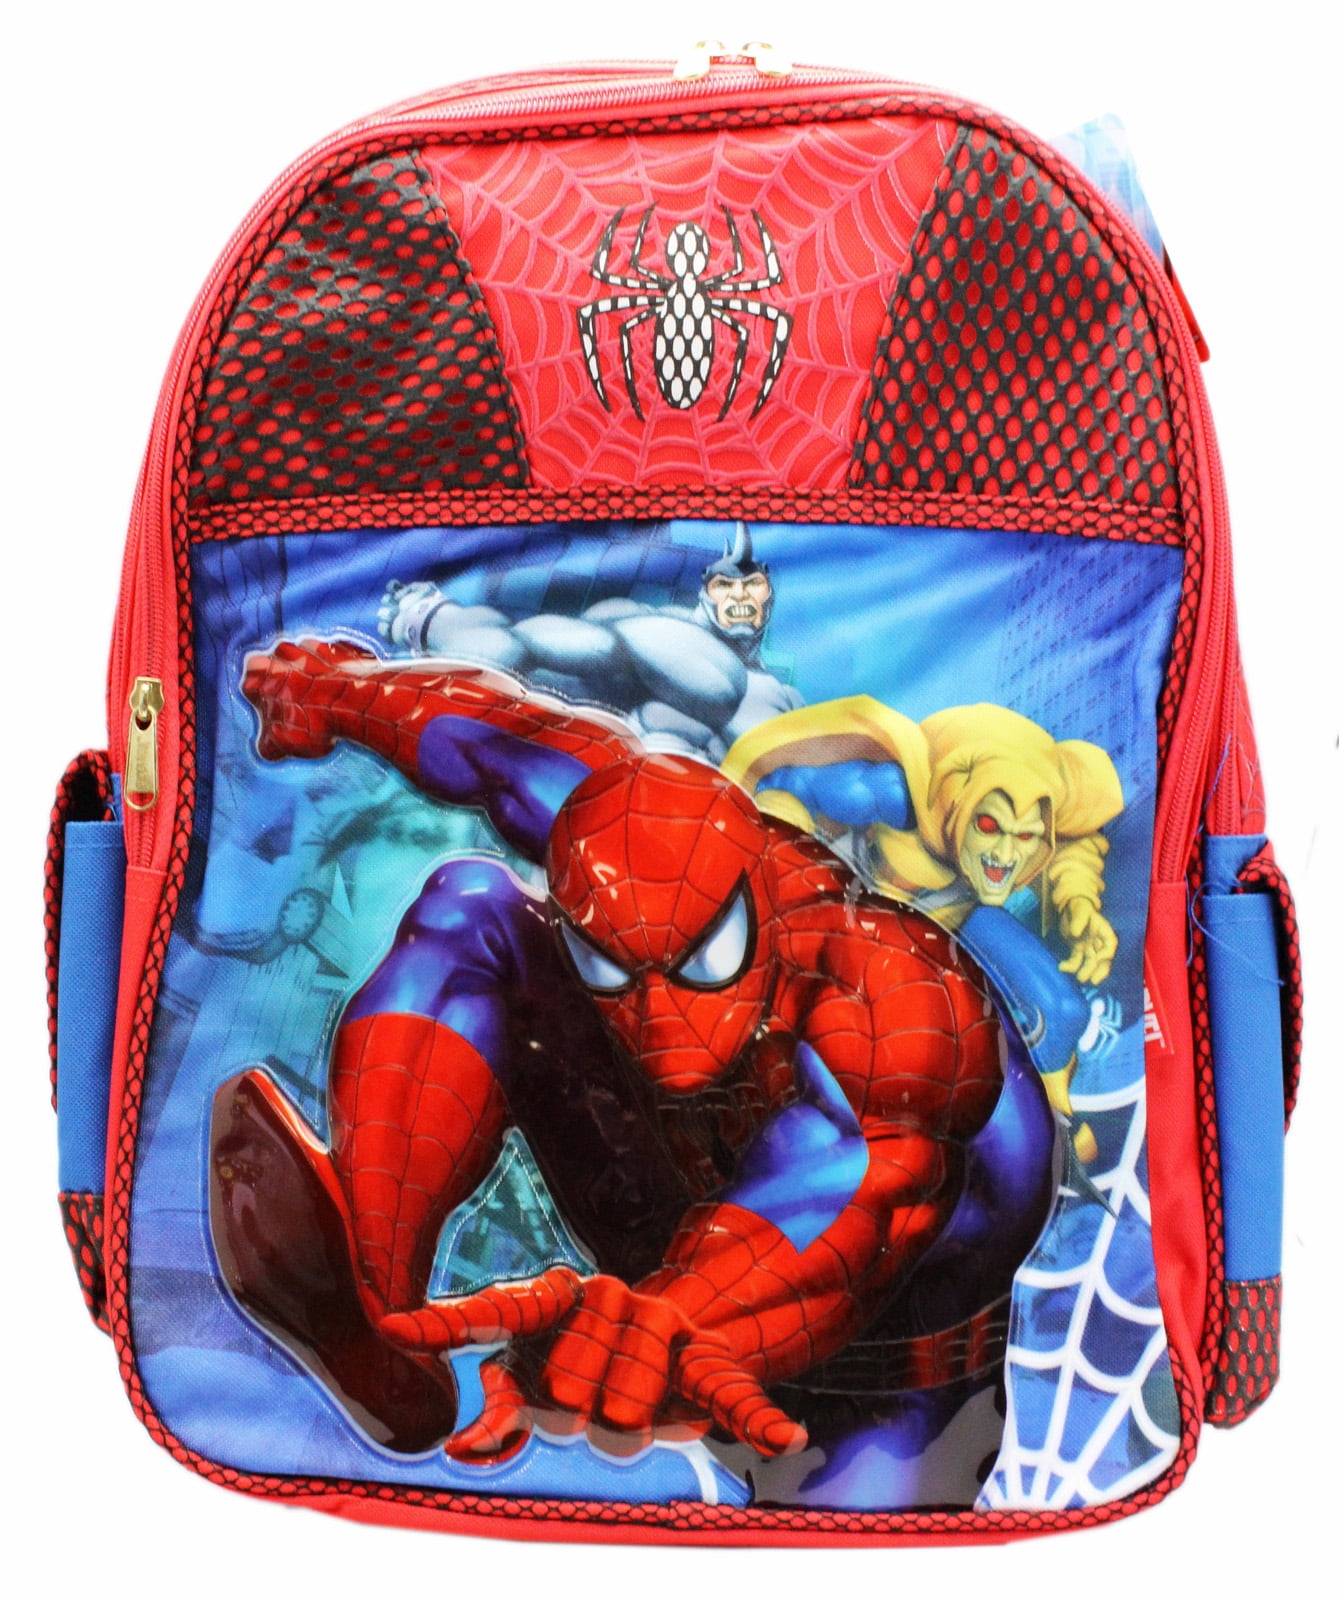 Spiderman – Kids Licensing